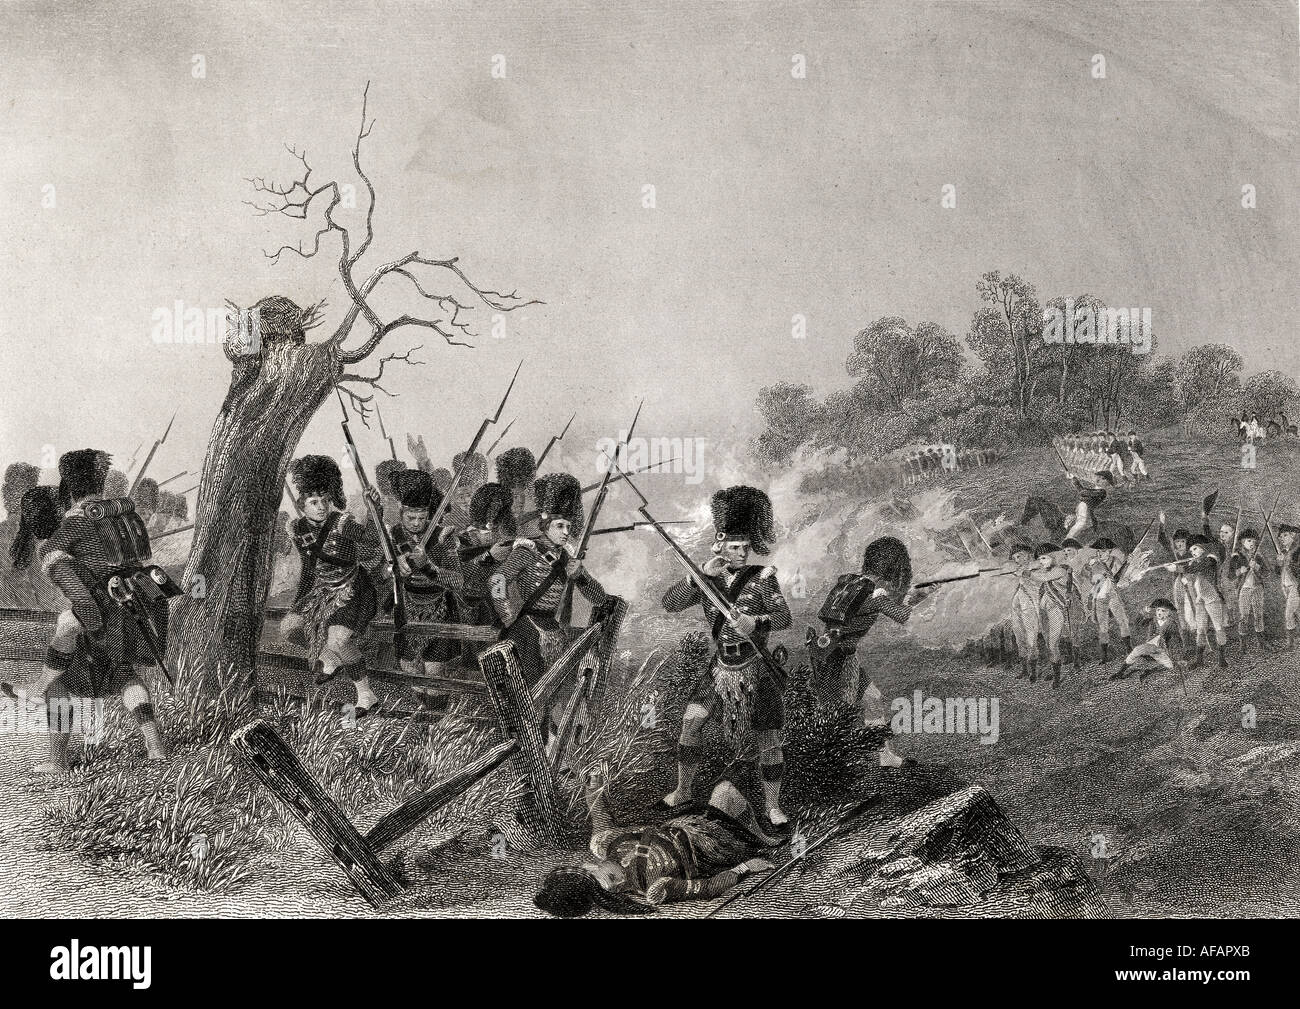 Battaglia Di Harlem Heights, Manhattan Island, New York, Usa, 1776. Da una stampa del 19th secolo incisa da J C Armytage dopo Chappel Foto Stock